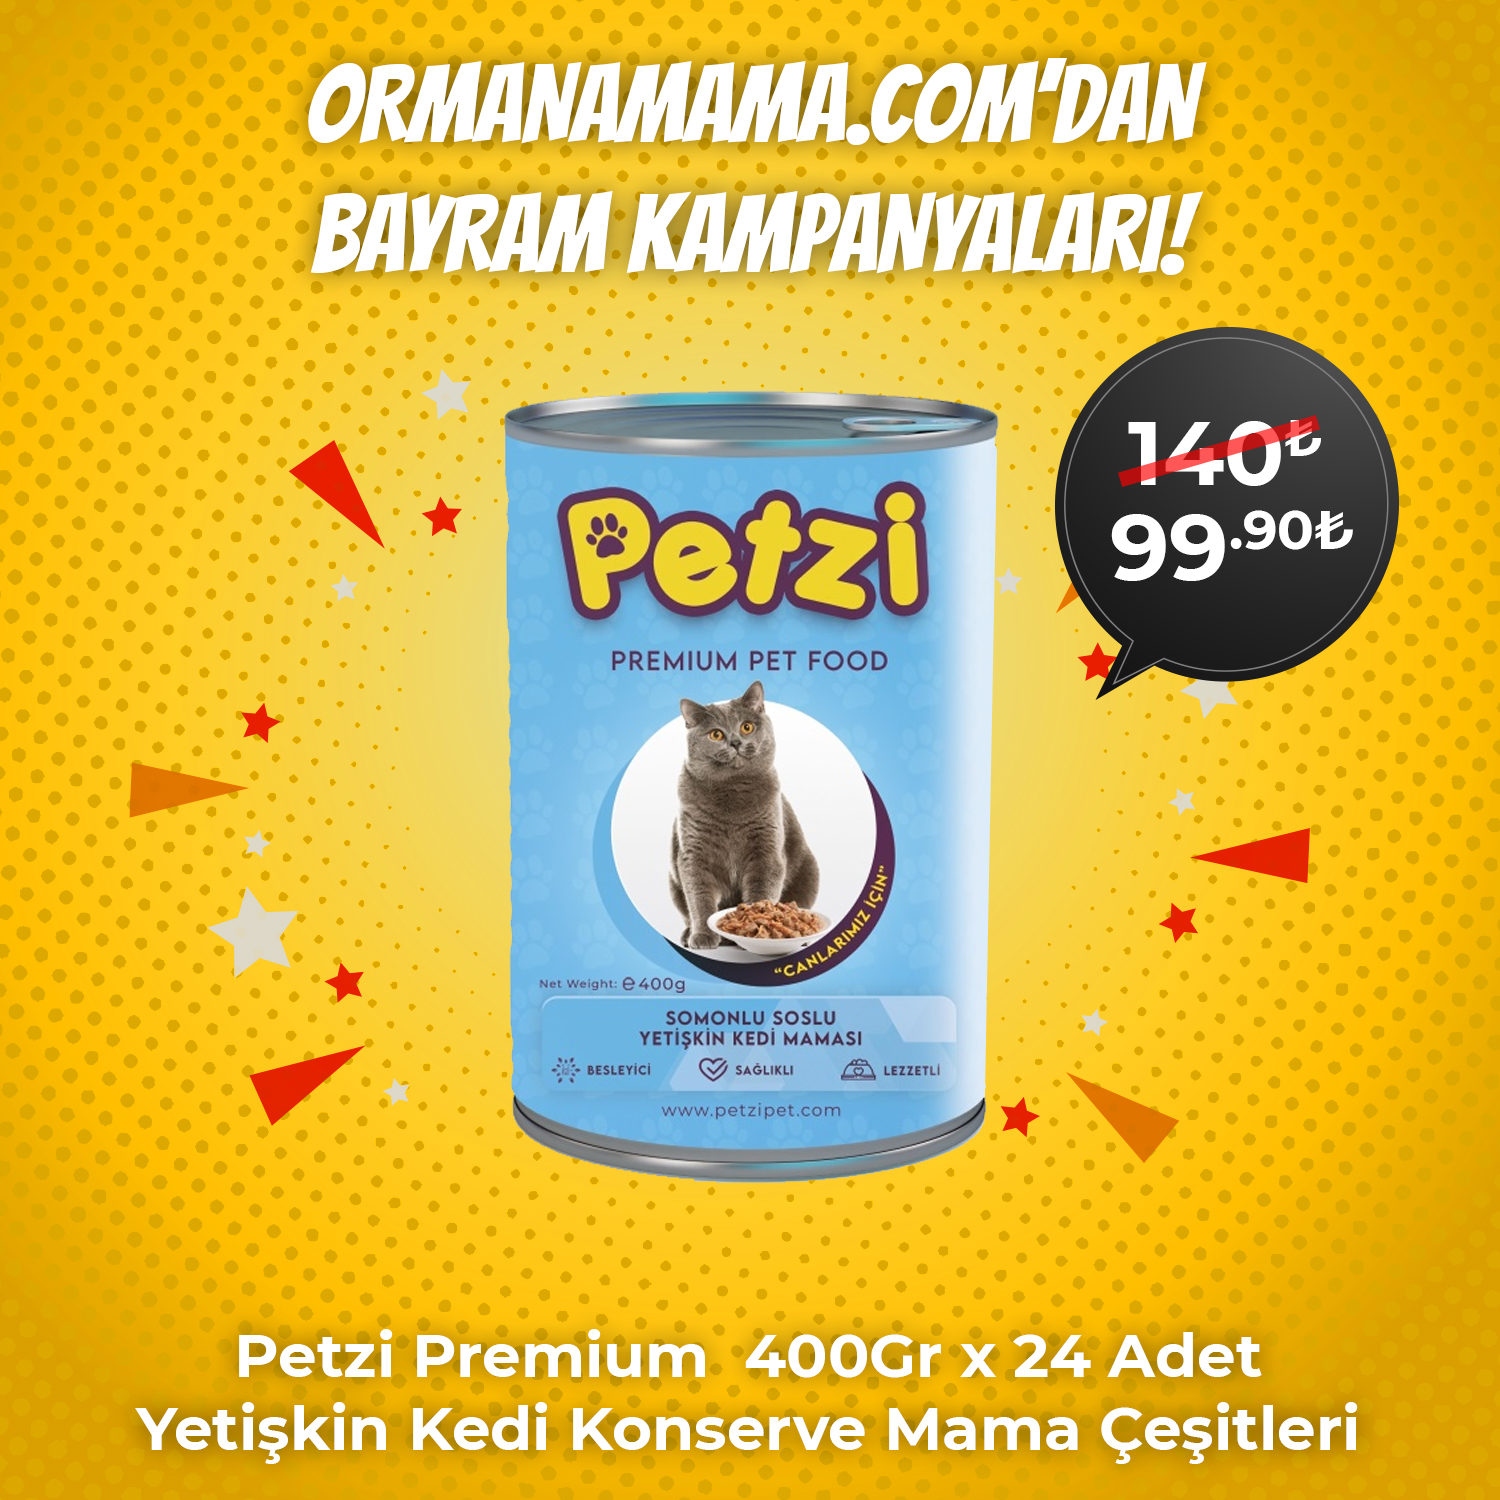 Petzi Premium  400Gr x 24 Adet Yetişkin Kedi Konserve Mama Çeşitleri